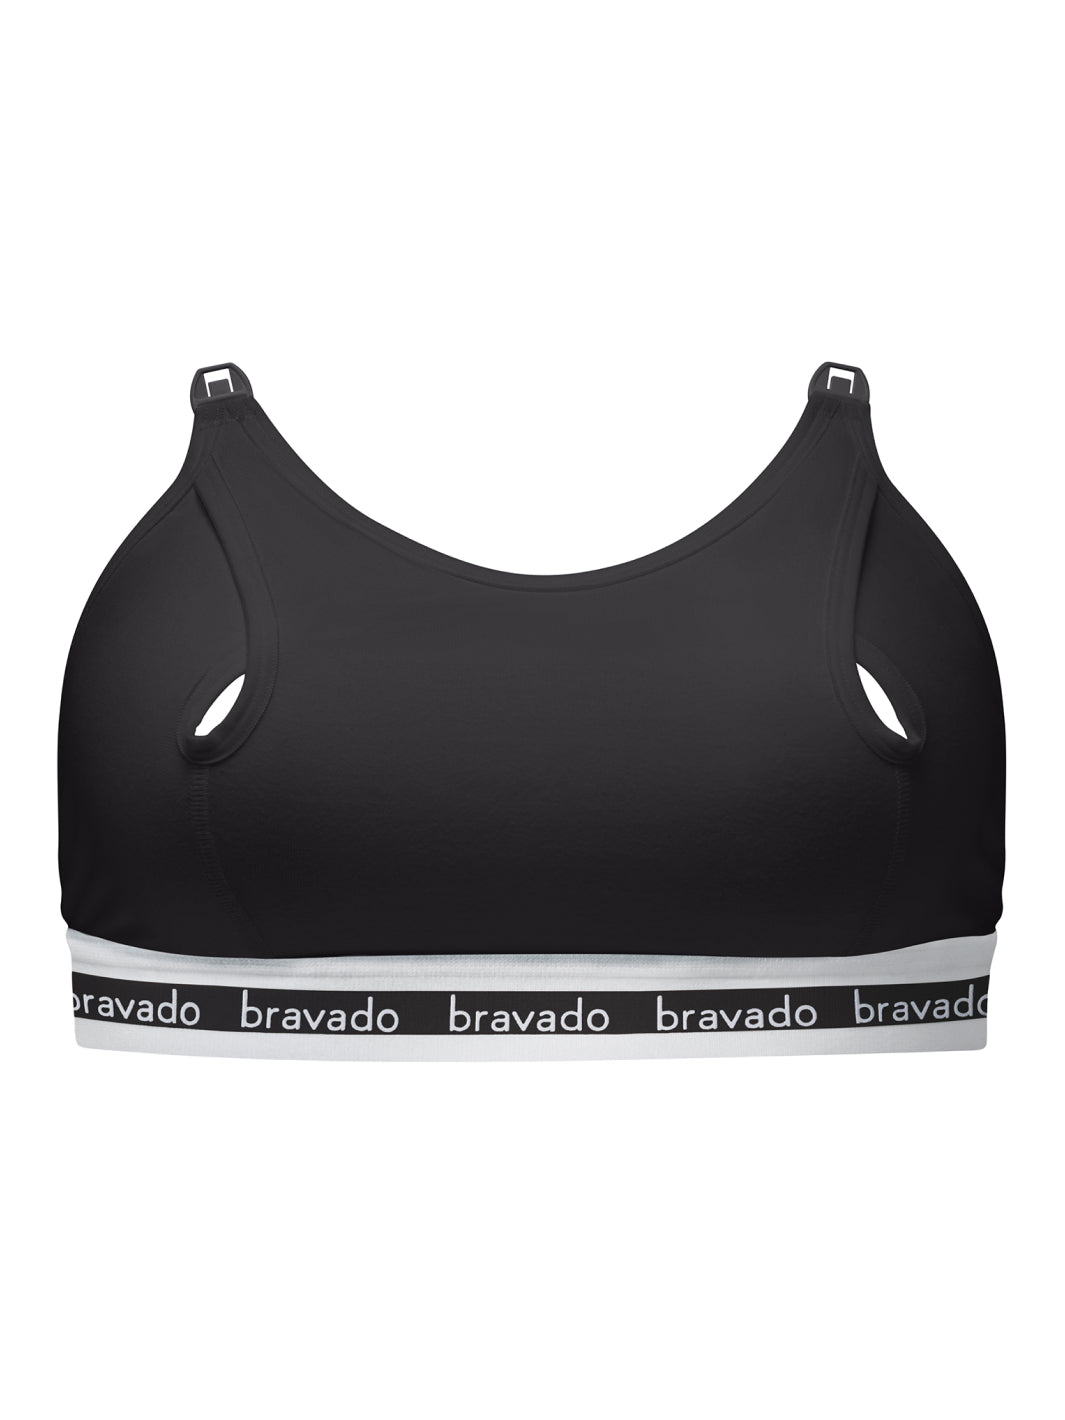 Clip and Pump™ Hands-Free Nursing Bra Accessory – Bravado Designs USA